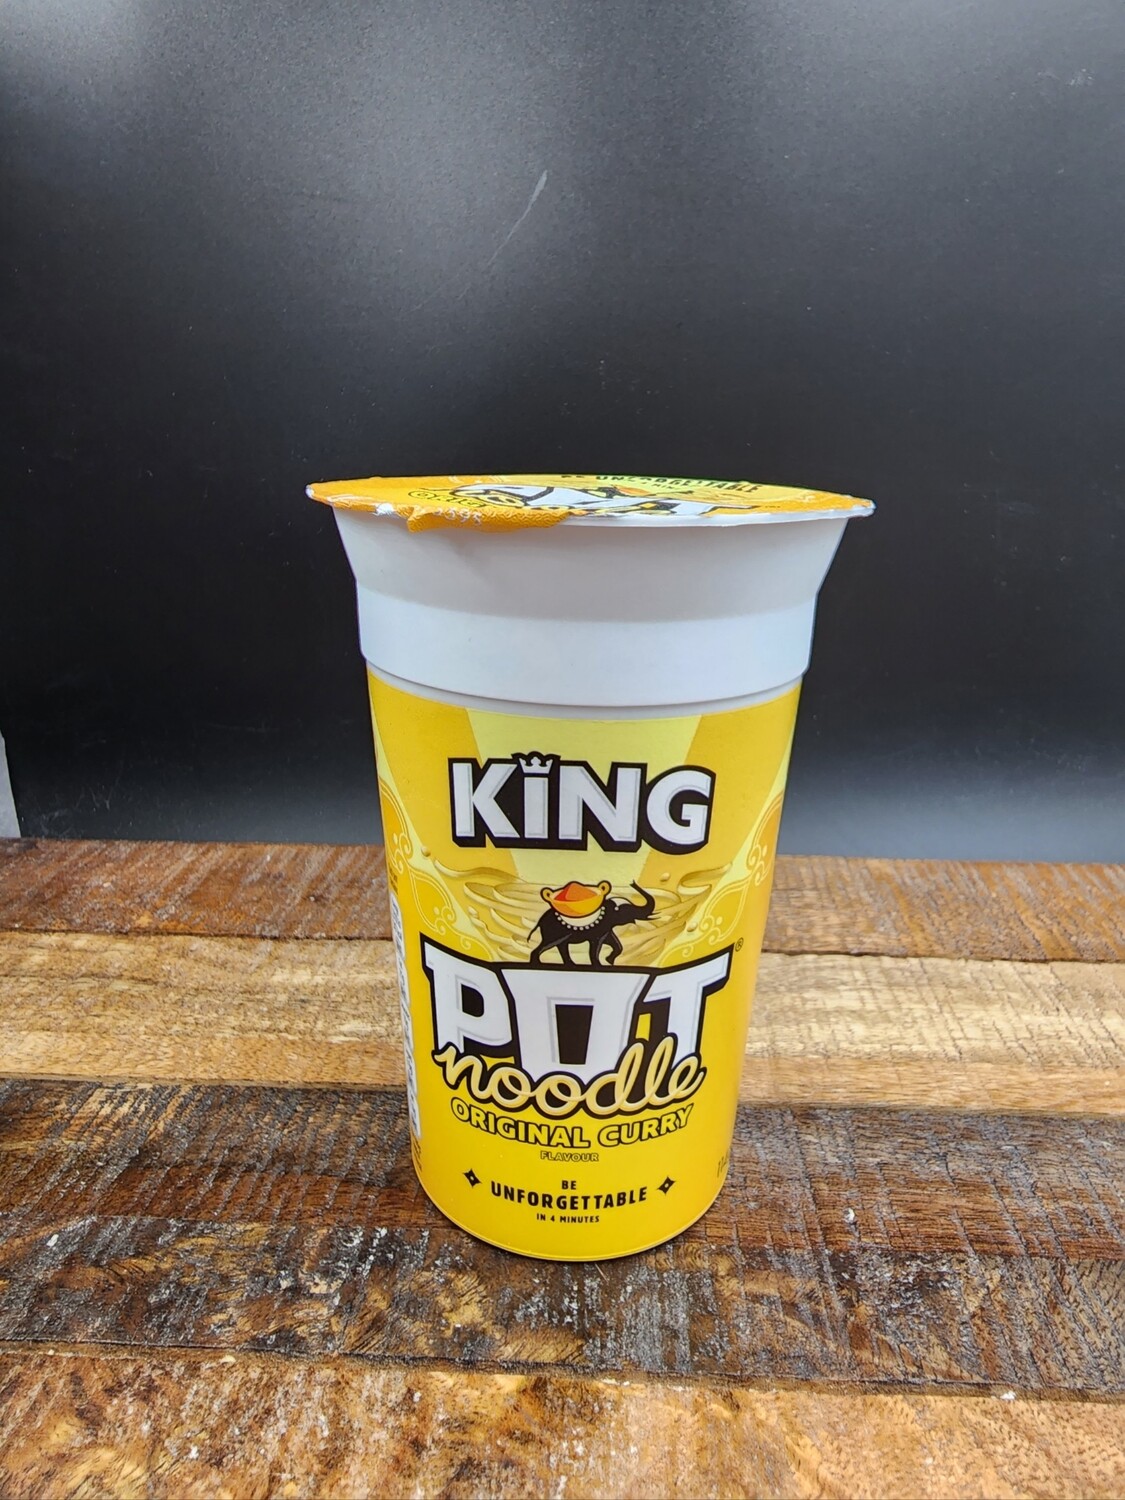 King Pot Original Curry 114g